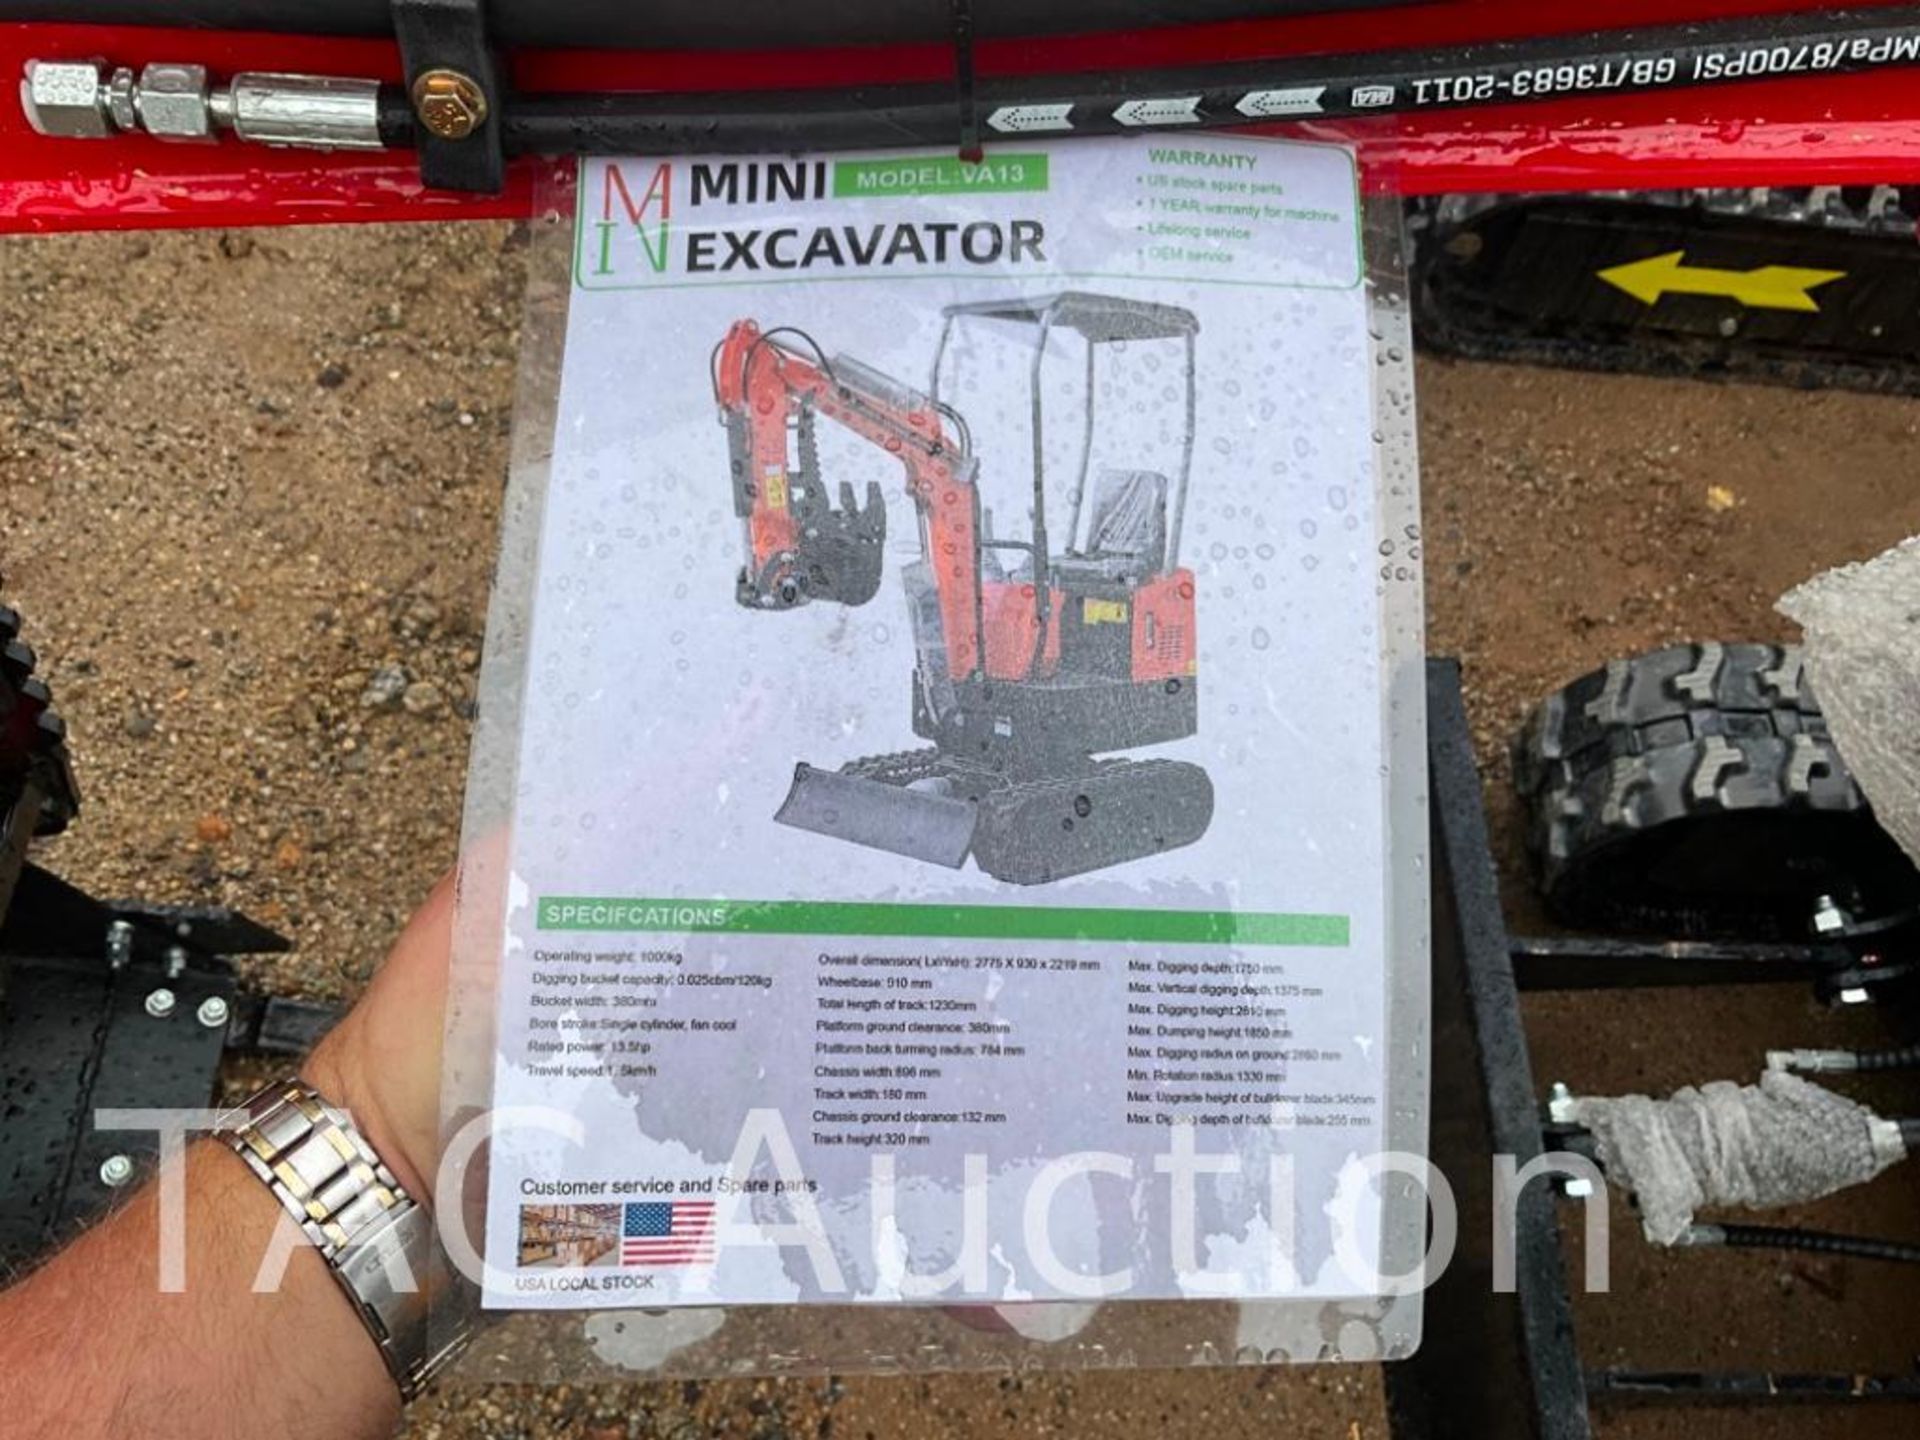 New MIVA VA13 Mini Excavator - Image 21 of 22